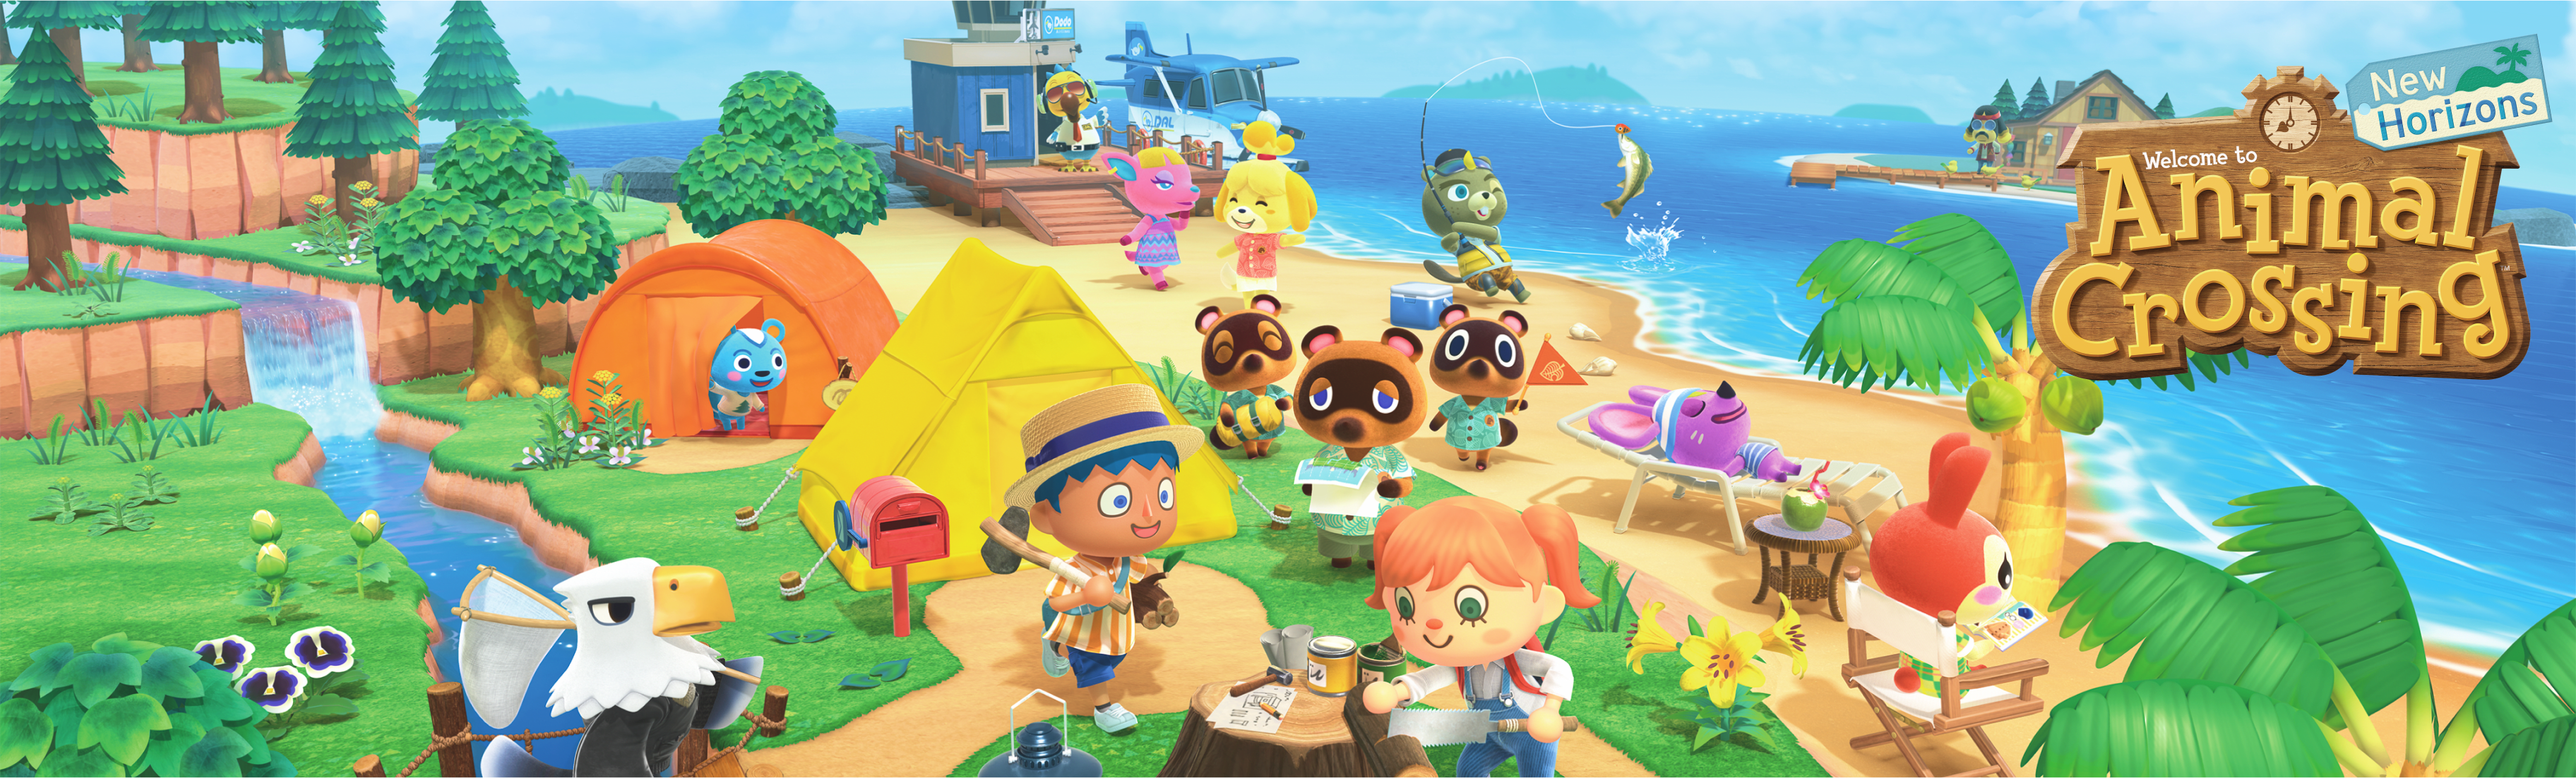 Animal Crossing: New Horizons game art